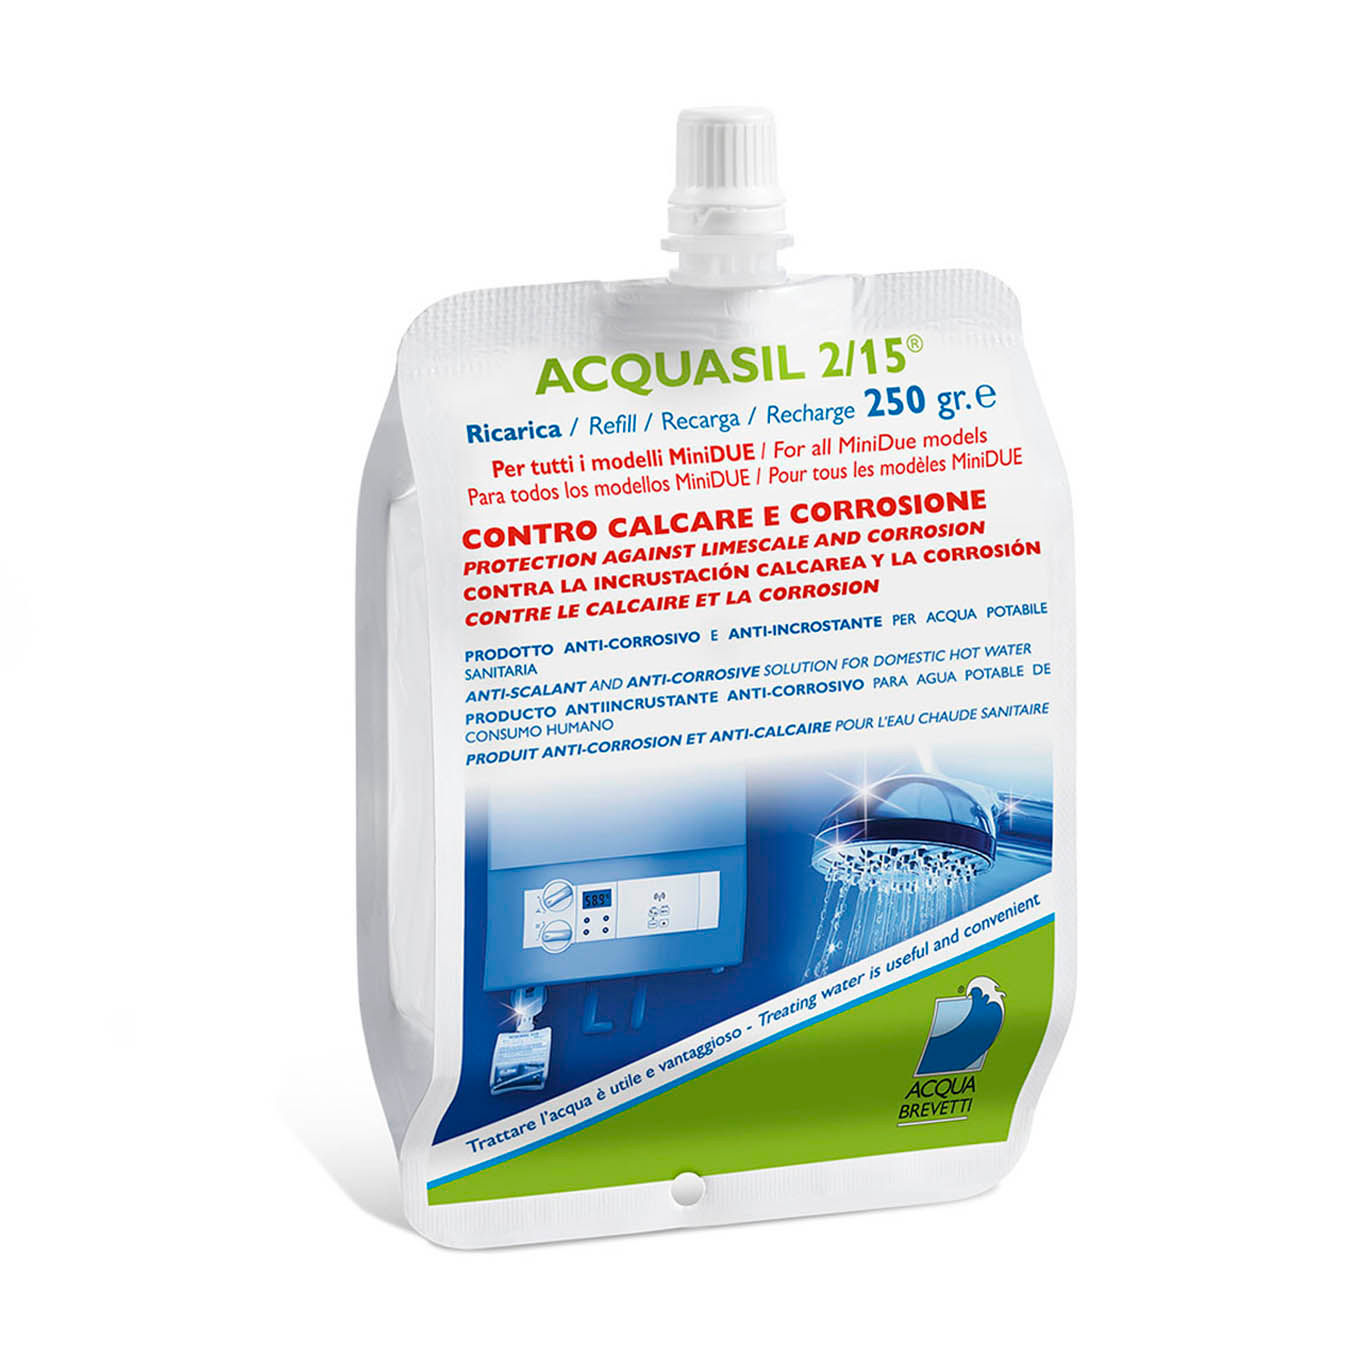 Ricarica AcquaSIL 2/15® - Sacca usa e getta 250 ml